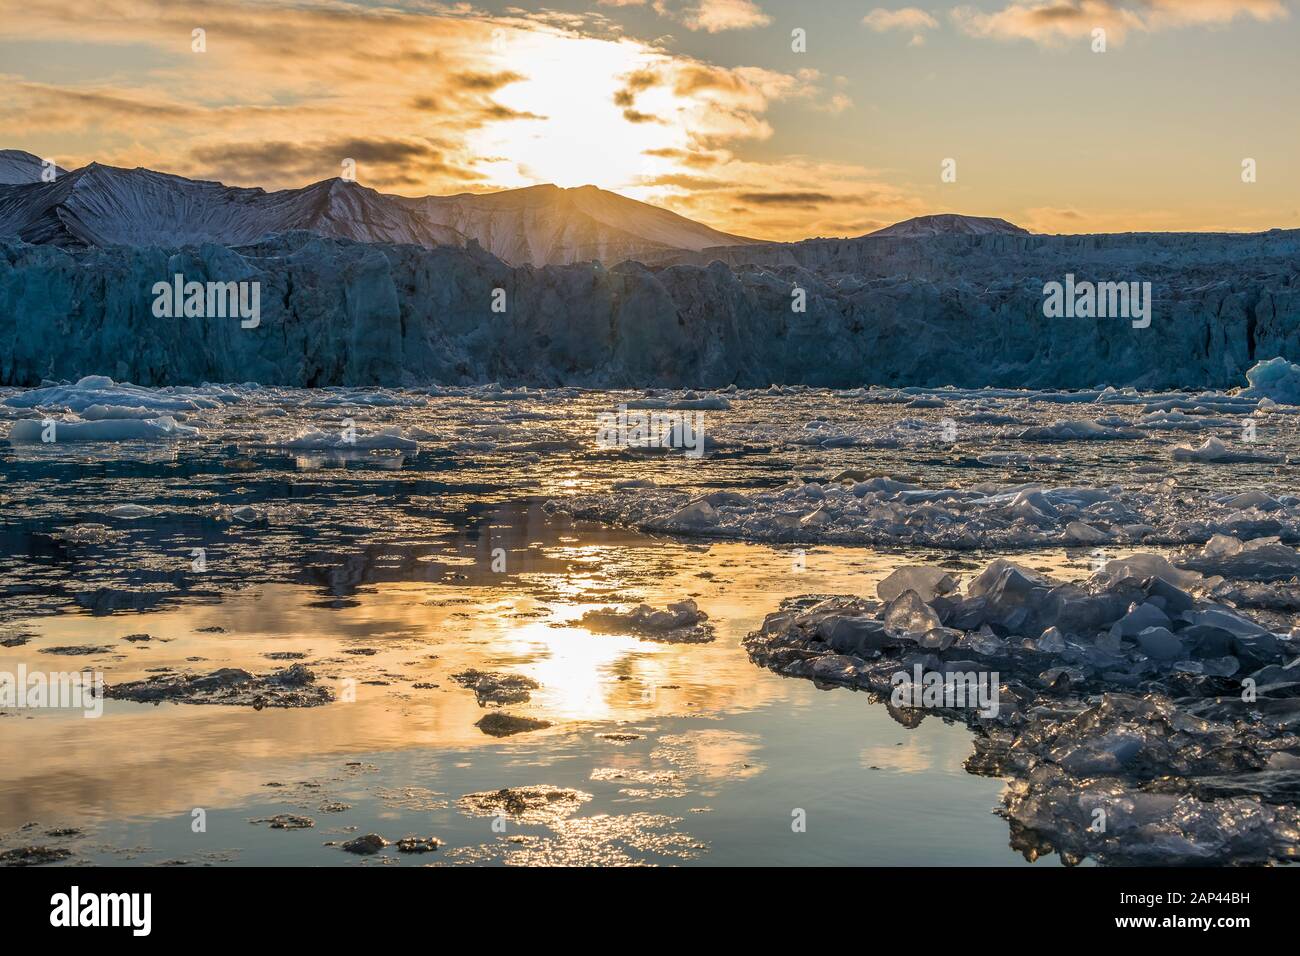 Arktische Gletscherlandschaft mit Drifteis auf dem Ozean bei Sonnenuntergang - erstaunliche Polarregion Stockfoto